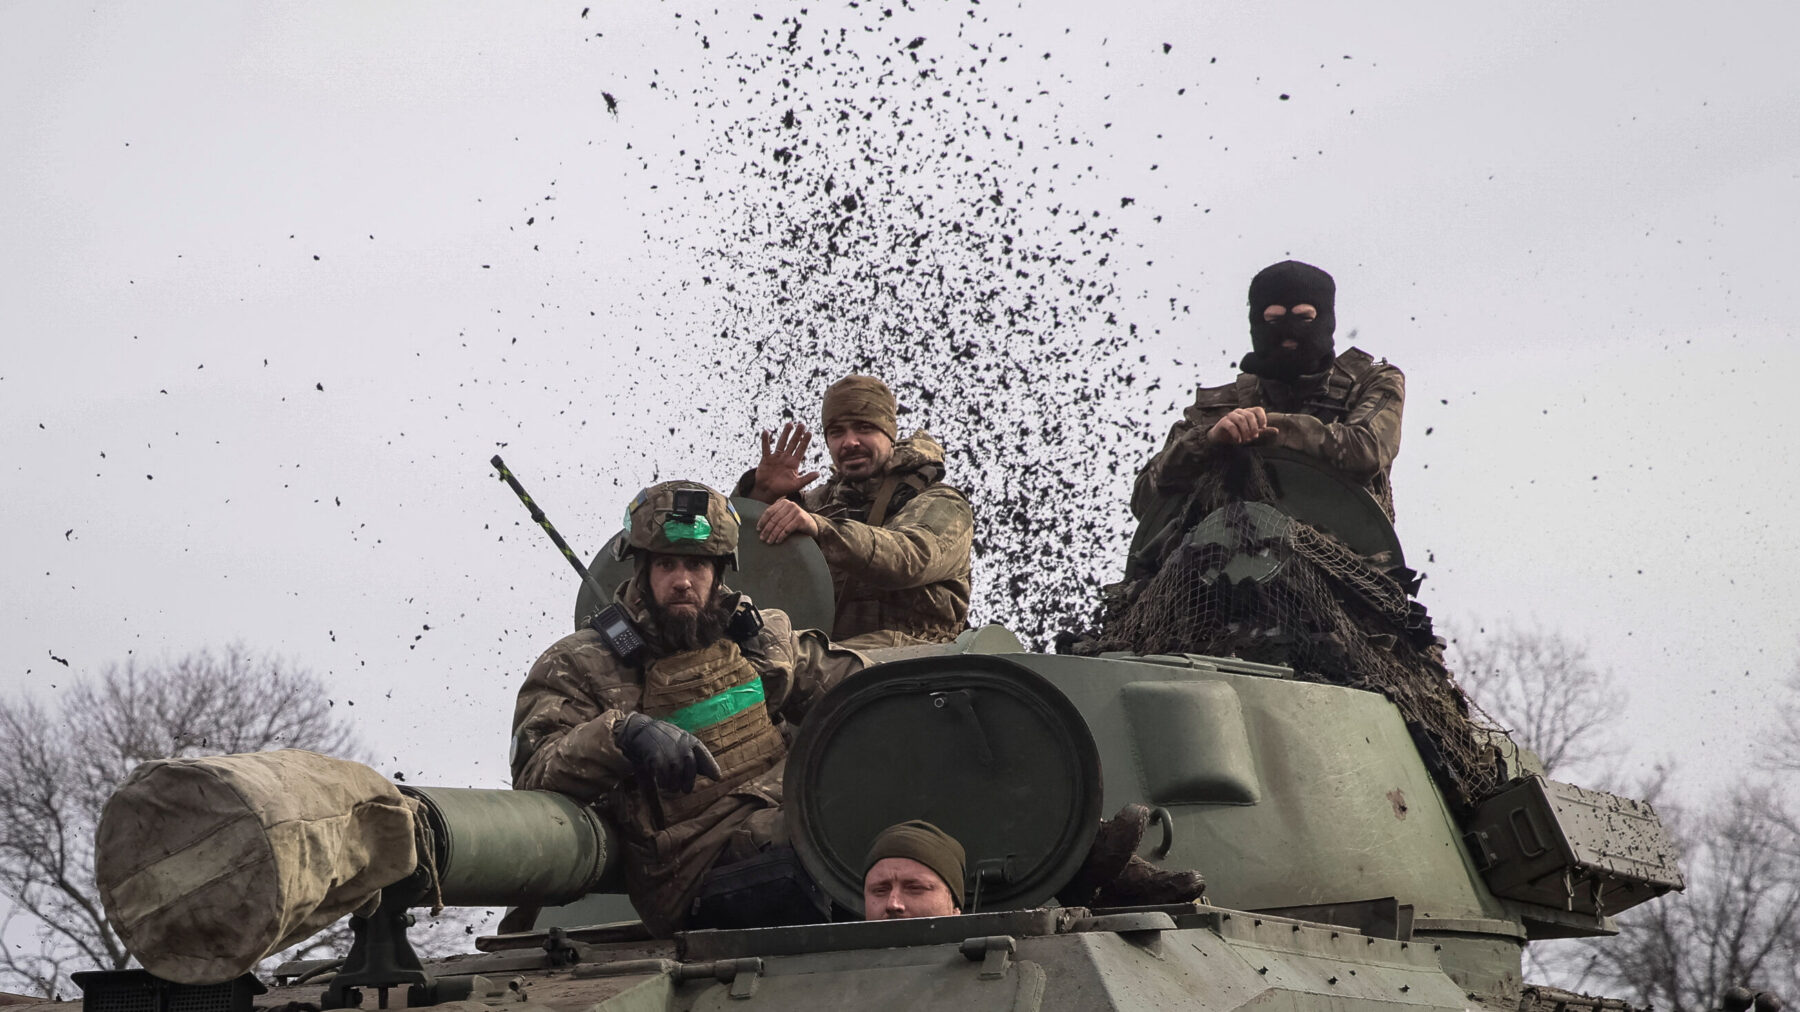 Ukrainebrief 3. marts: Bakhmut er blevet symbolsk for krigen – nu har russerne omringet byen